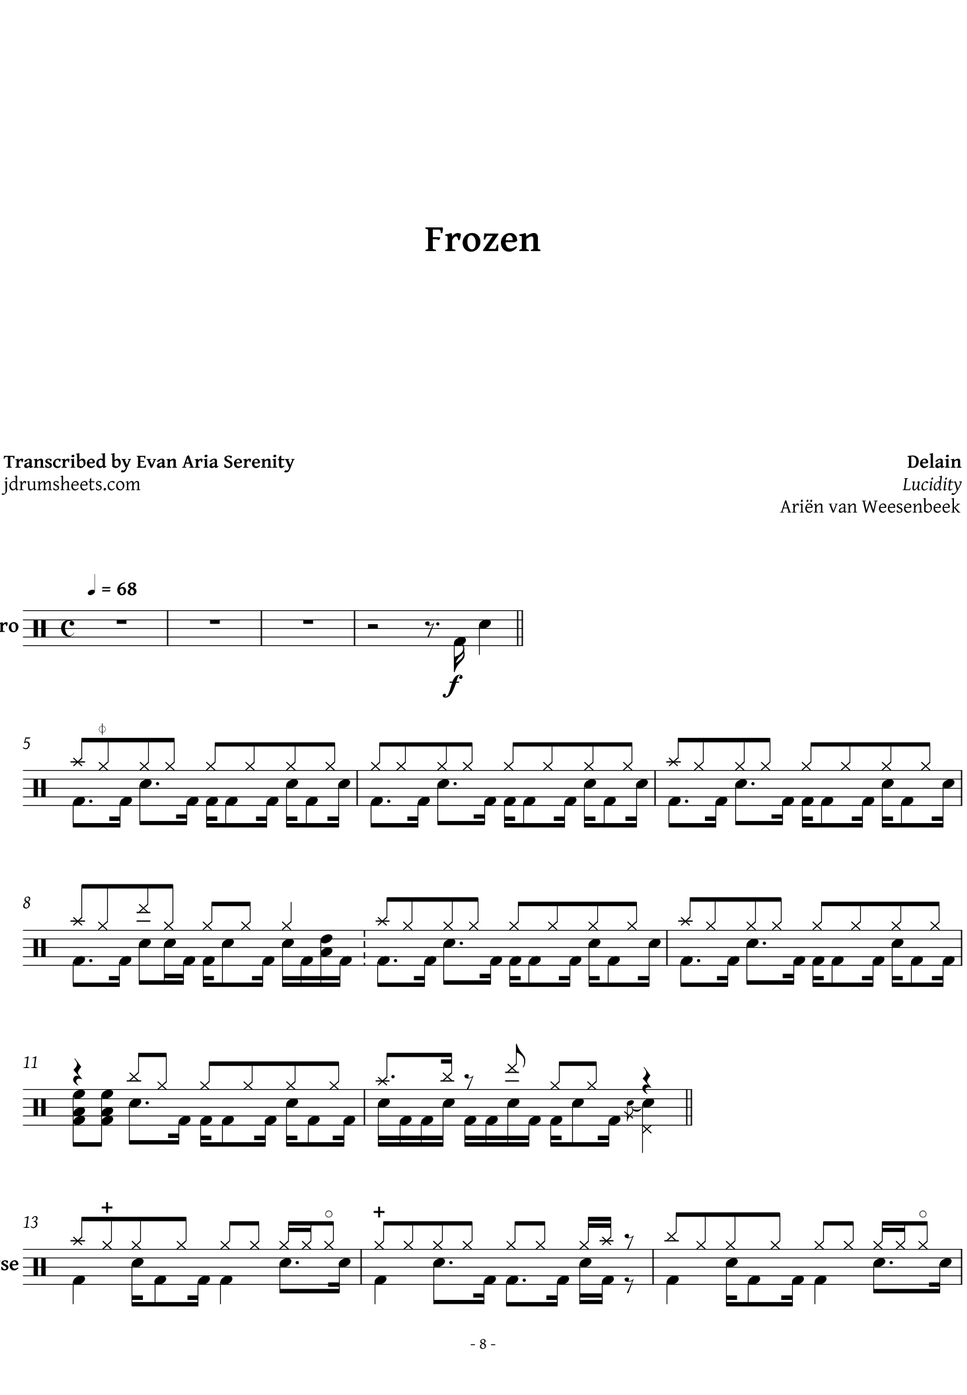 Delain - Frozen Sheets by Evan Jaslow